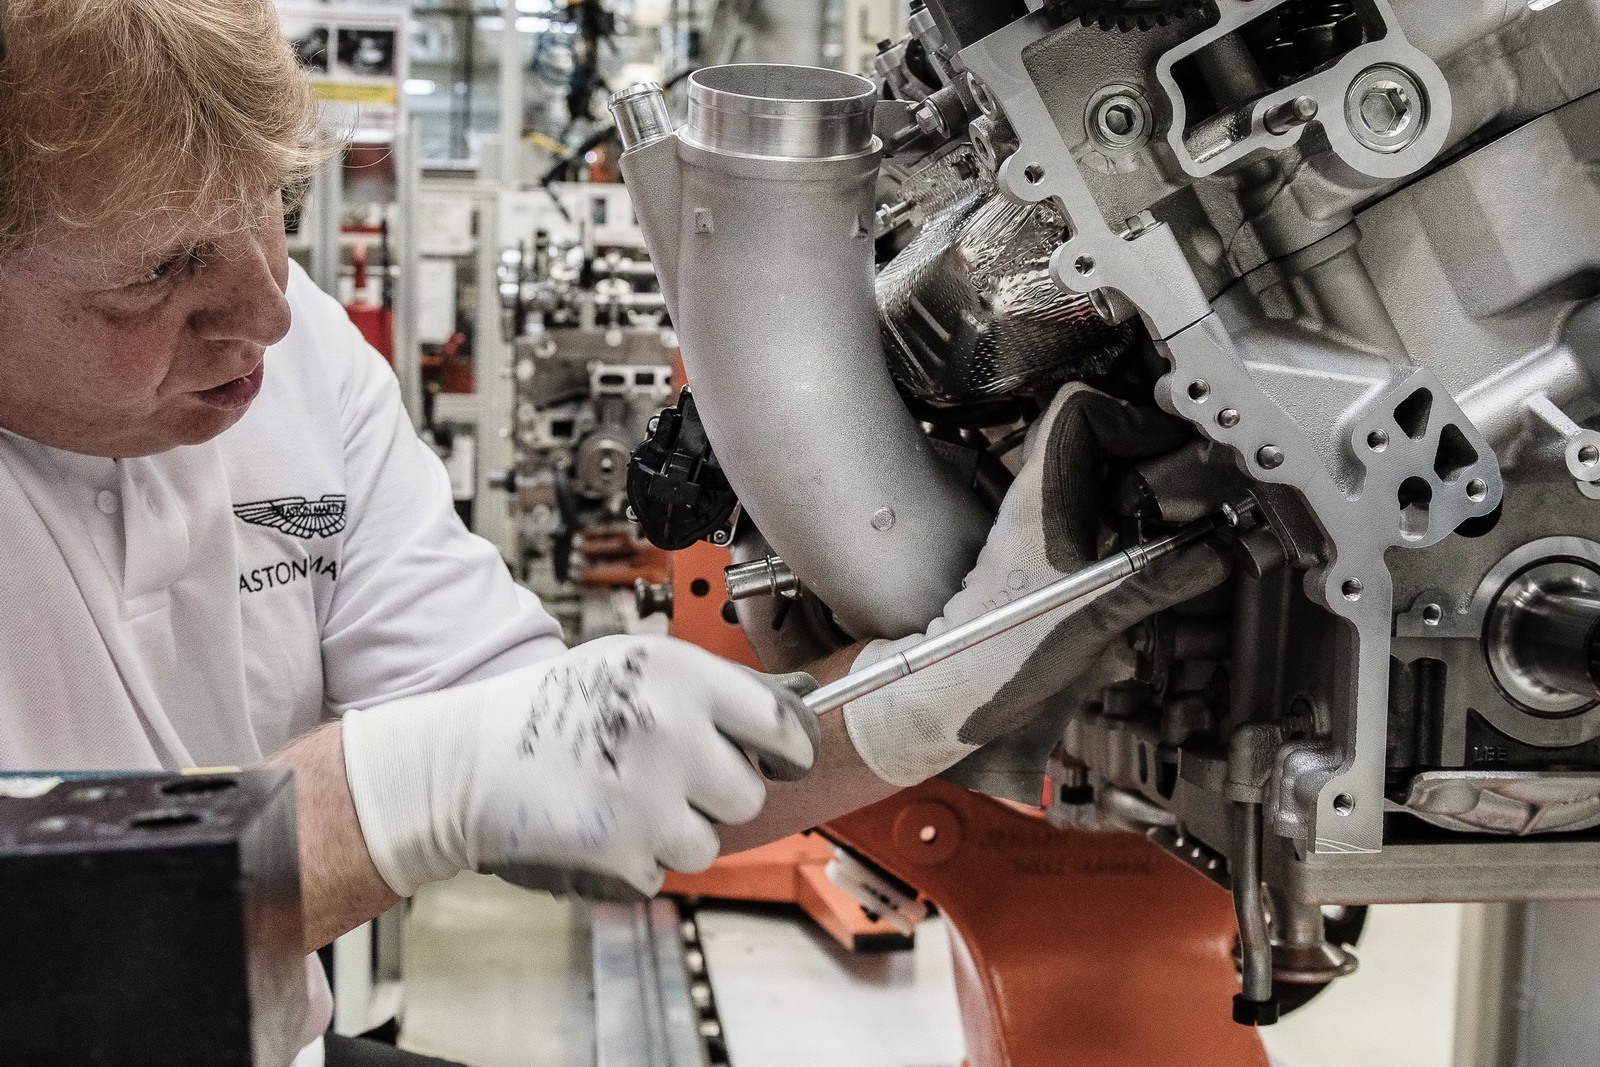 
Hãng Aston Martin cho biết, các chi tiết sẽ được ghép lại thành động cơ dưới bàn tay của một kỹ thuật viên. Thời gian để hoàn thành một khối động cơ V12 của Aston Martin DB11 là 8 tiếng đồng hồ trong nhà máy. Sau khi trải qua giai đoạn thử nghiệm nóng và lạnh, động cơ sẽ được chuyển đi.
